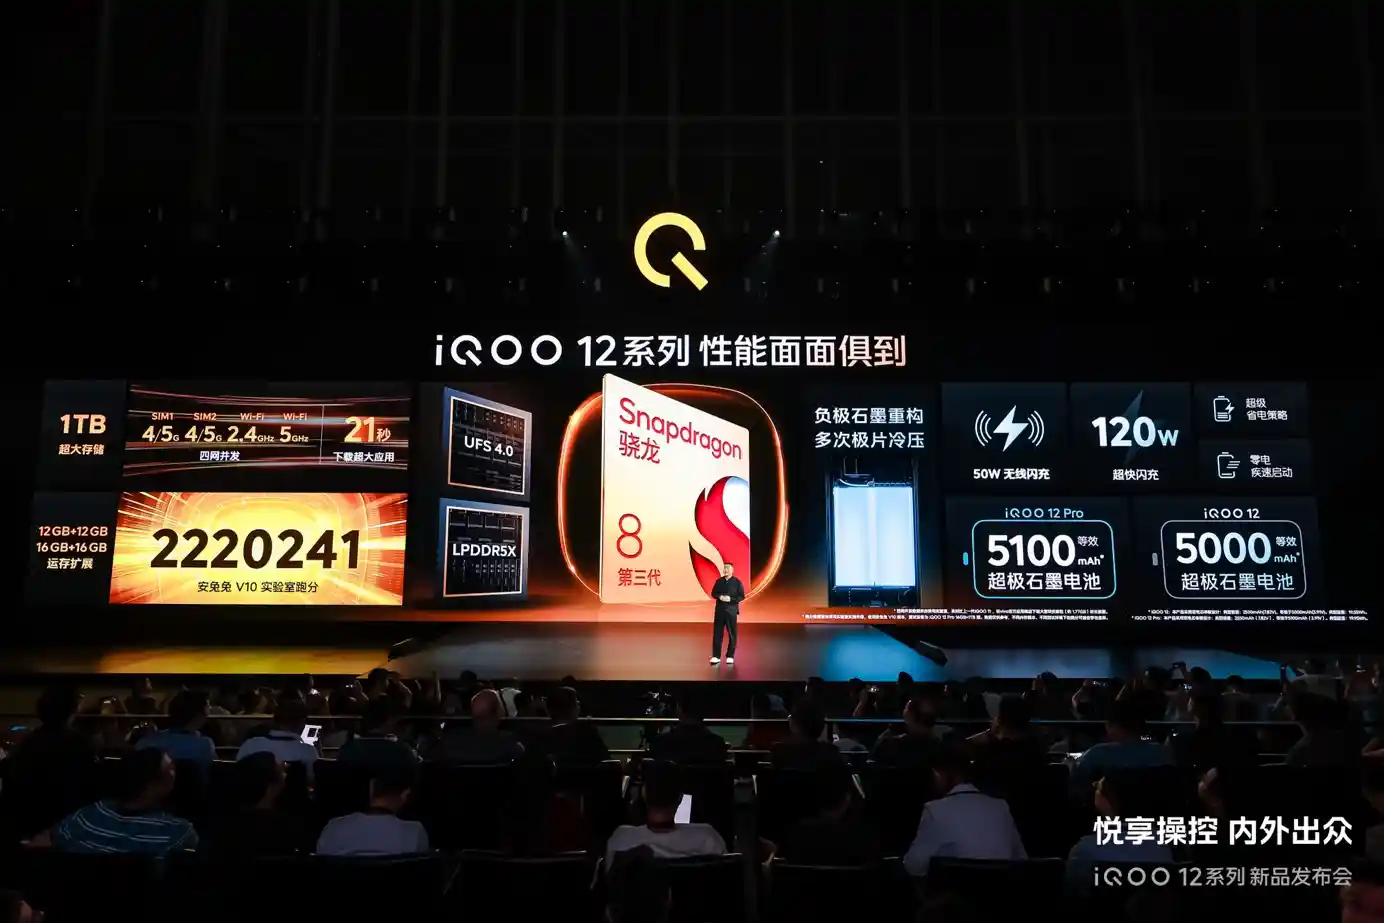 悦享操控 内外出众 年度最强旗舰iQOO 12系列发布